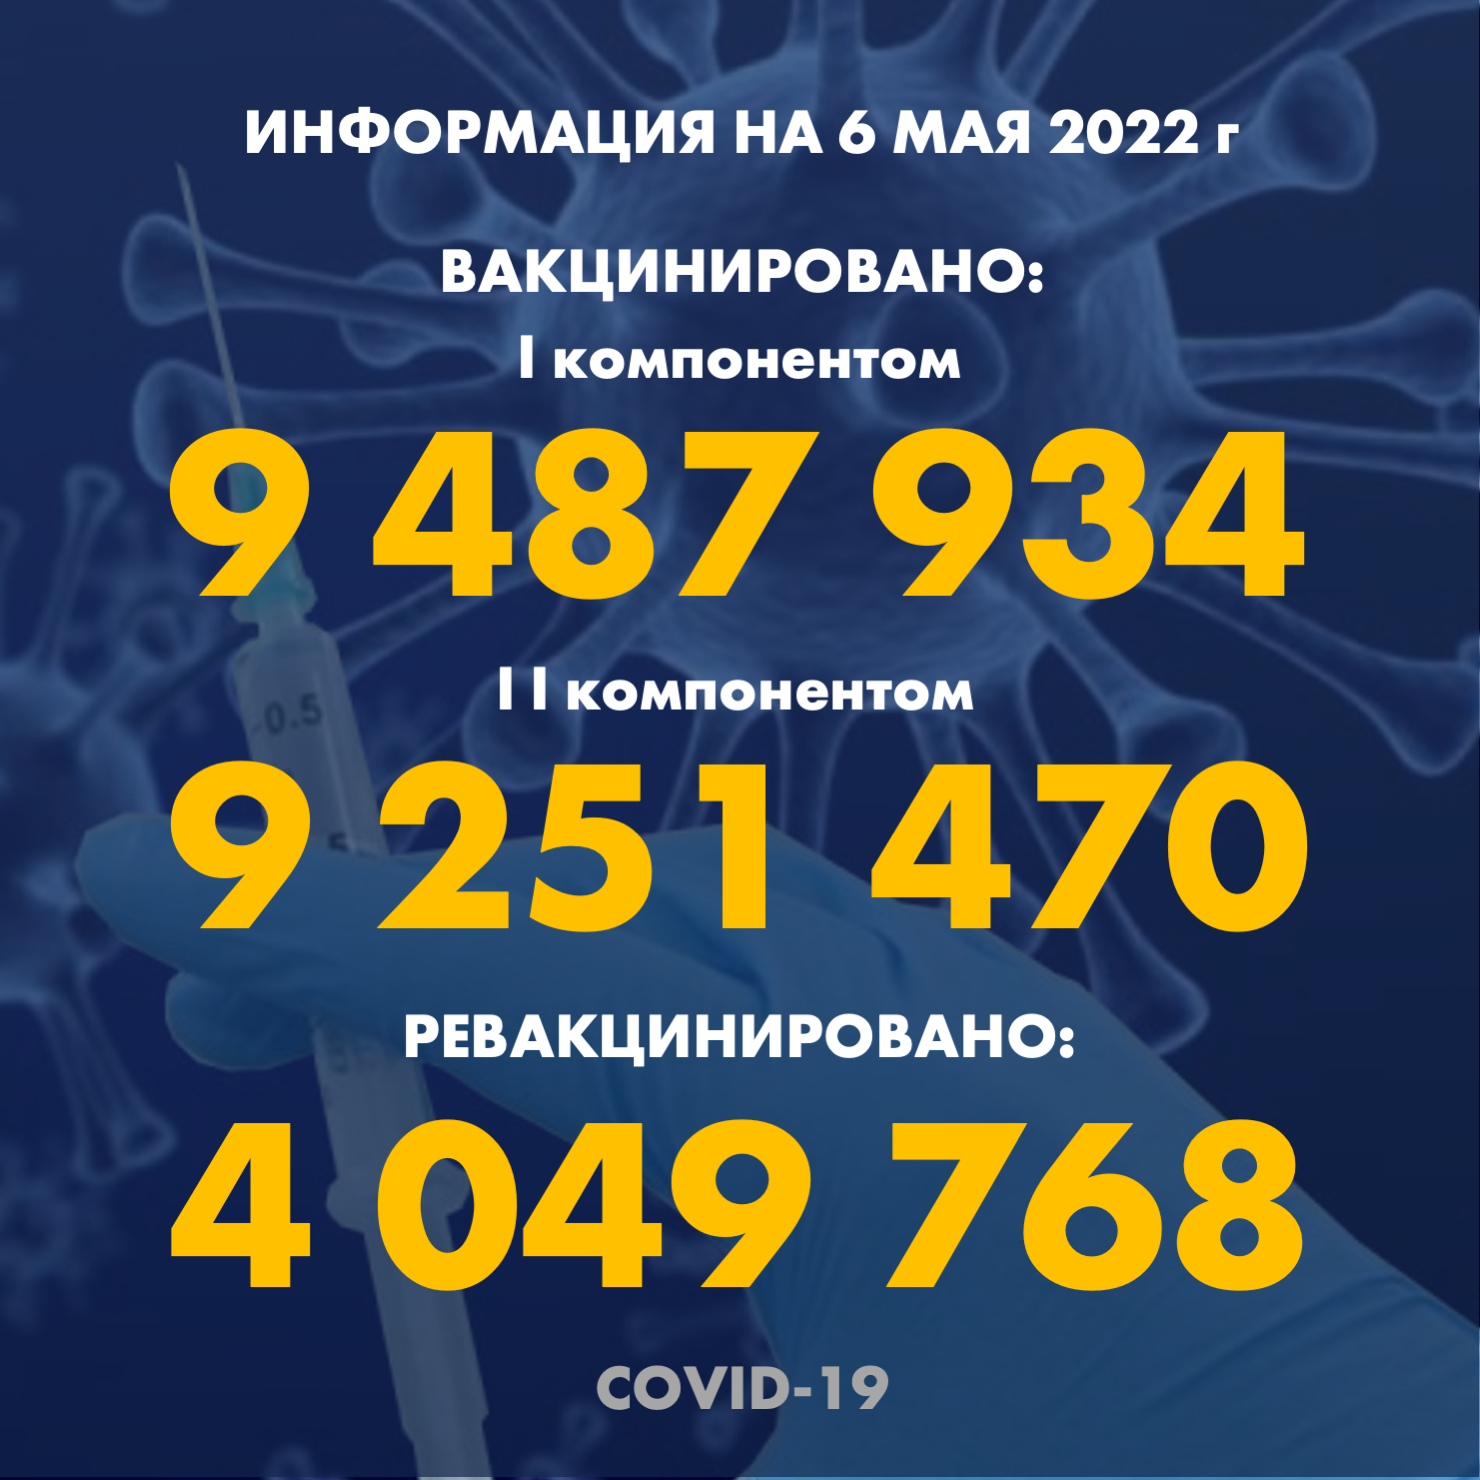 I компонентом 9 487 193 человек провакцинировано в Казахстане на 6.05.2022 г, II компонентом 9 251 470 человек. Ревакцинировано – 4 049 768